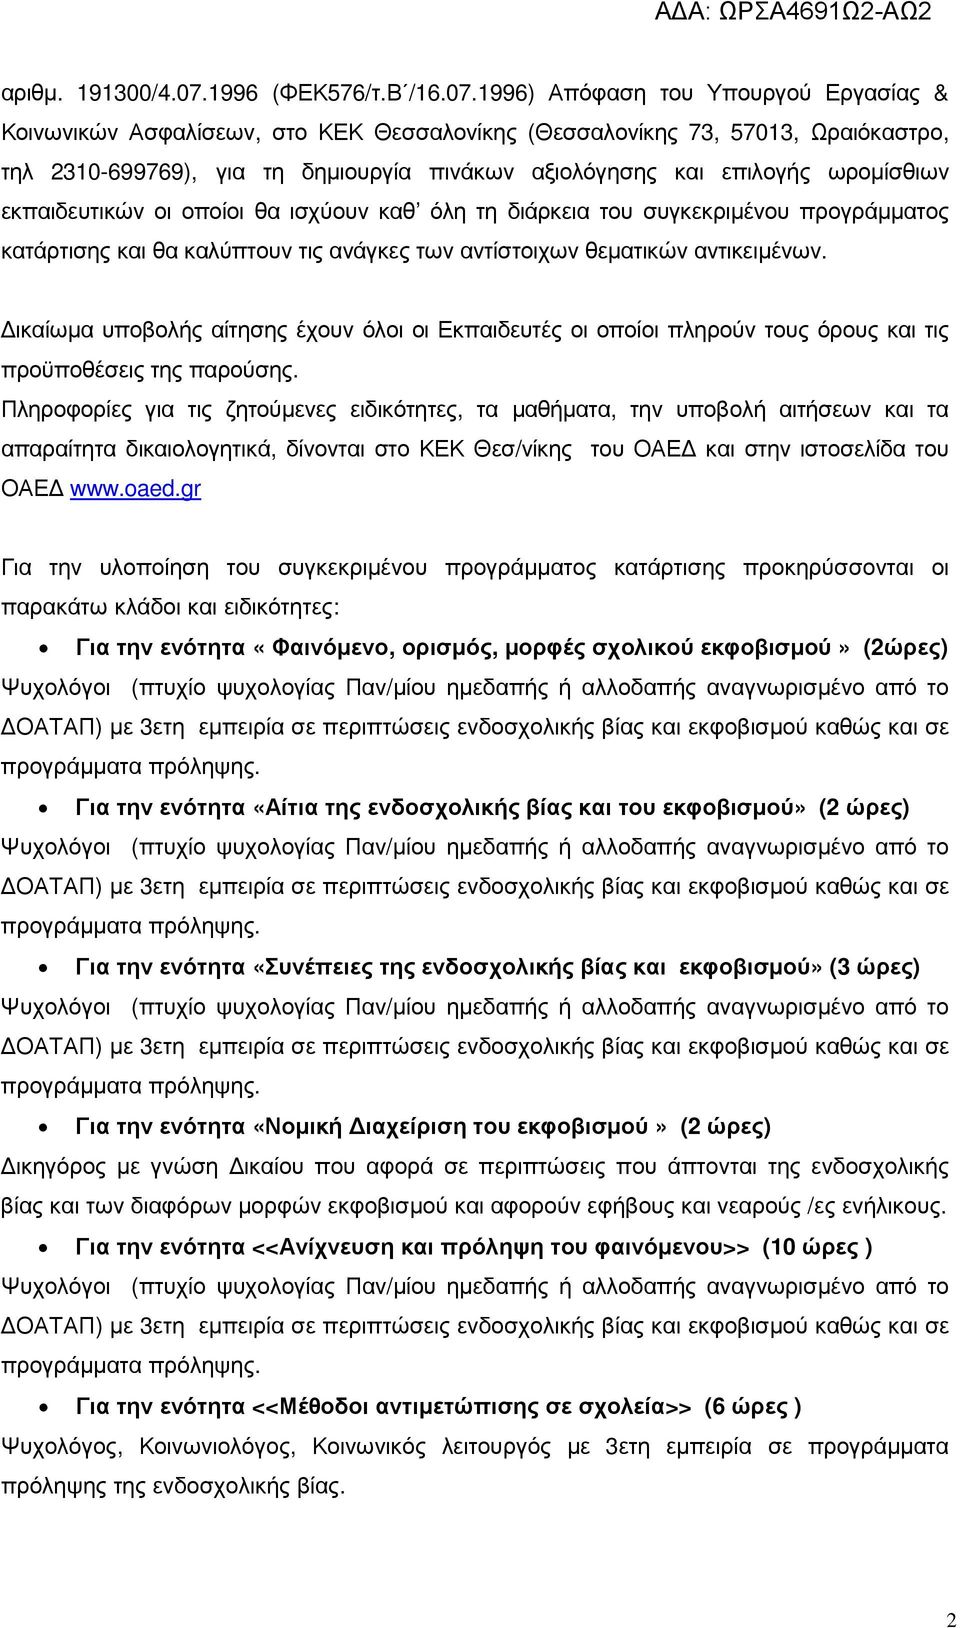 1996) Απόφαση του Υπουργού Εργασίας & Κοινωνικών Ασφαλίσεων, στο ΚΕΚ Θεσσαλονίκης (Θεσσαλονίκης 73, 57013, Ωραιόκαστρο, τηλ 2310-699769), για τη δηµιουργία πινάκων αξιολόγησης και επιλογής ωροµίσθιων